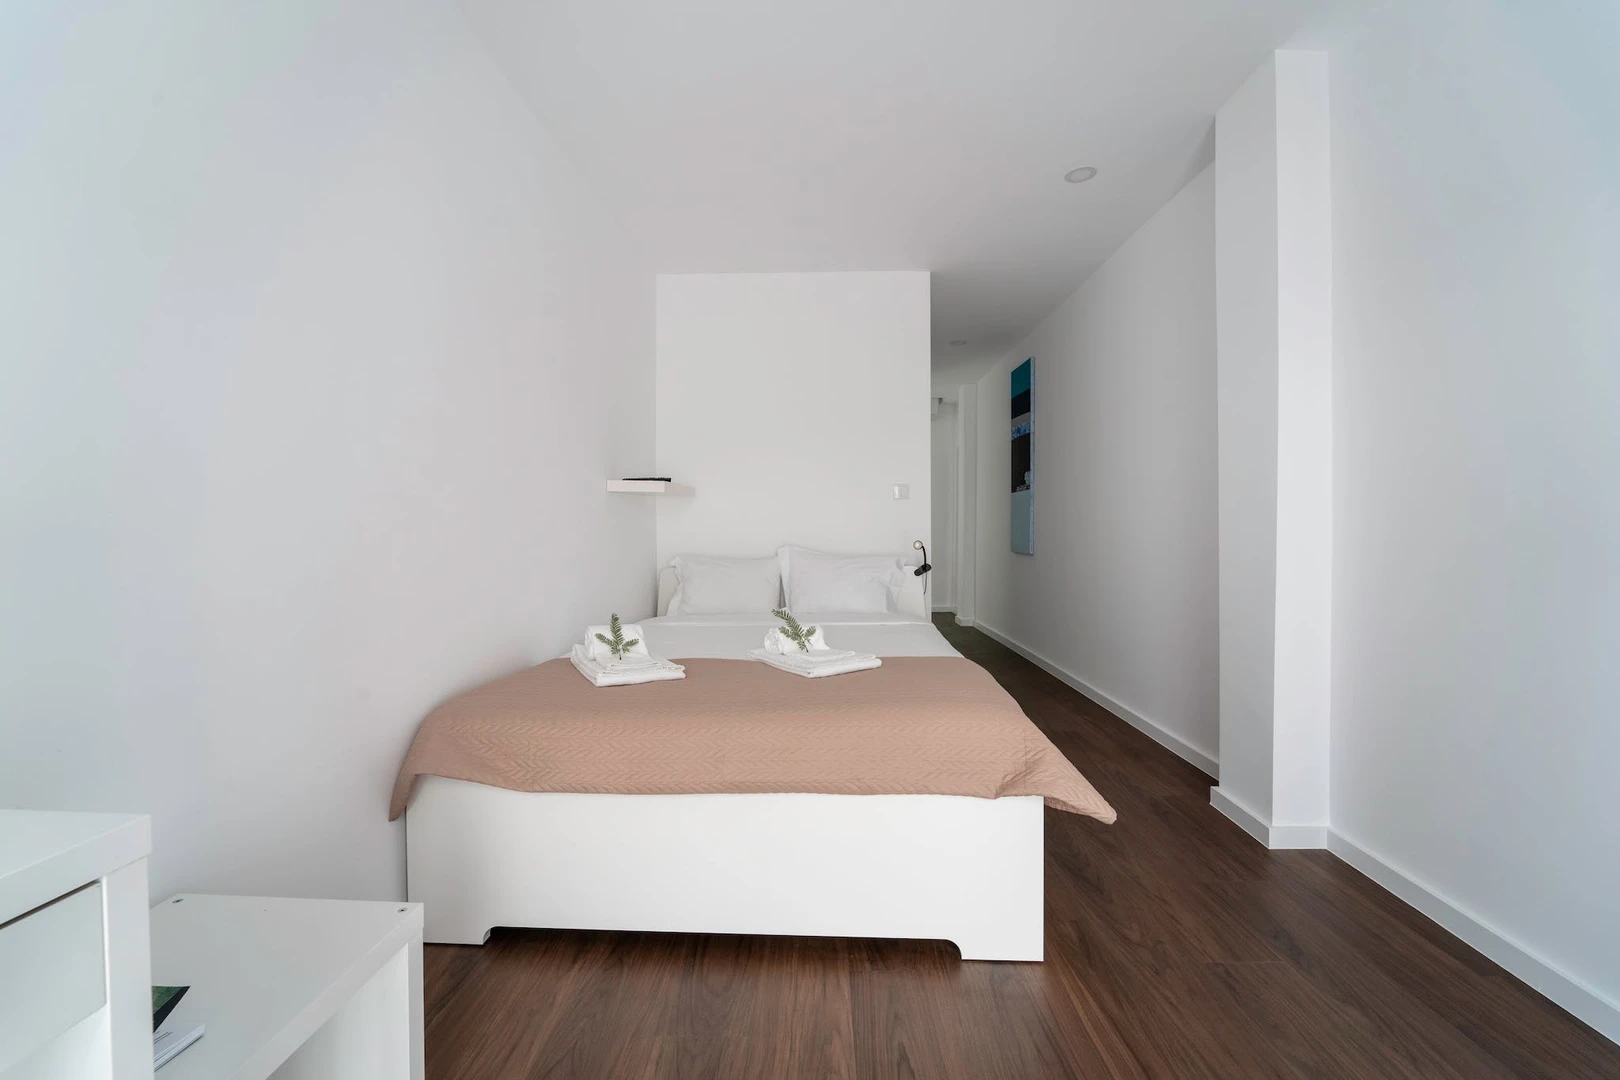 Alquiler de habitación en piso compartido en Braga